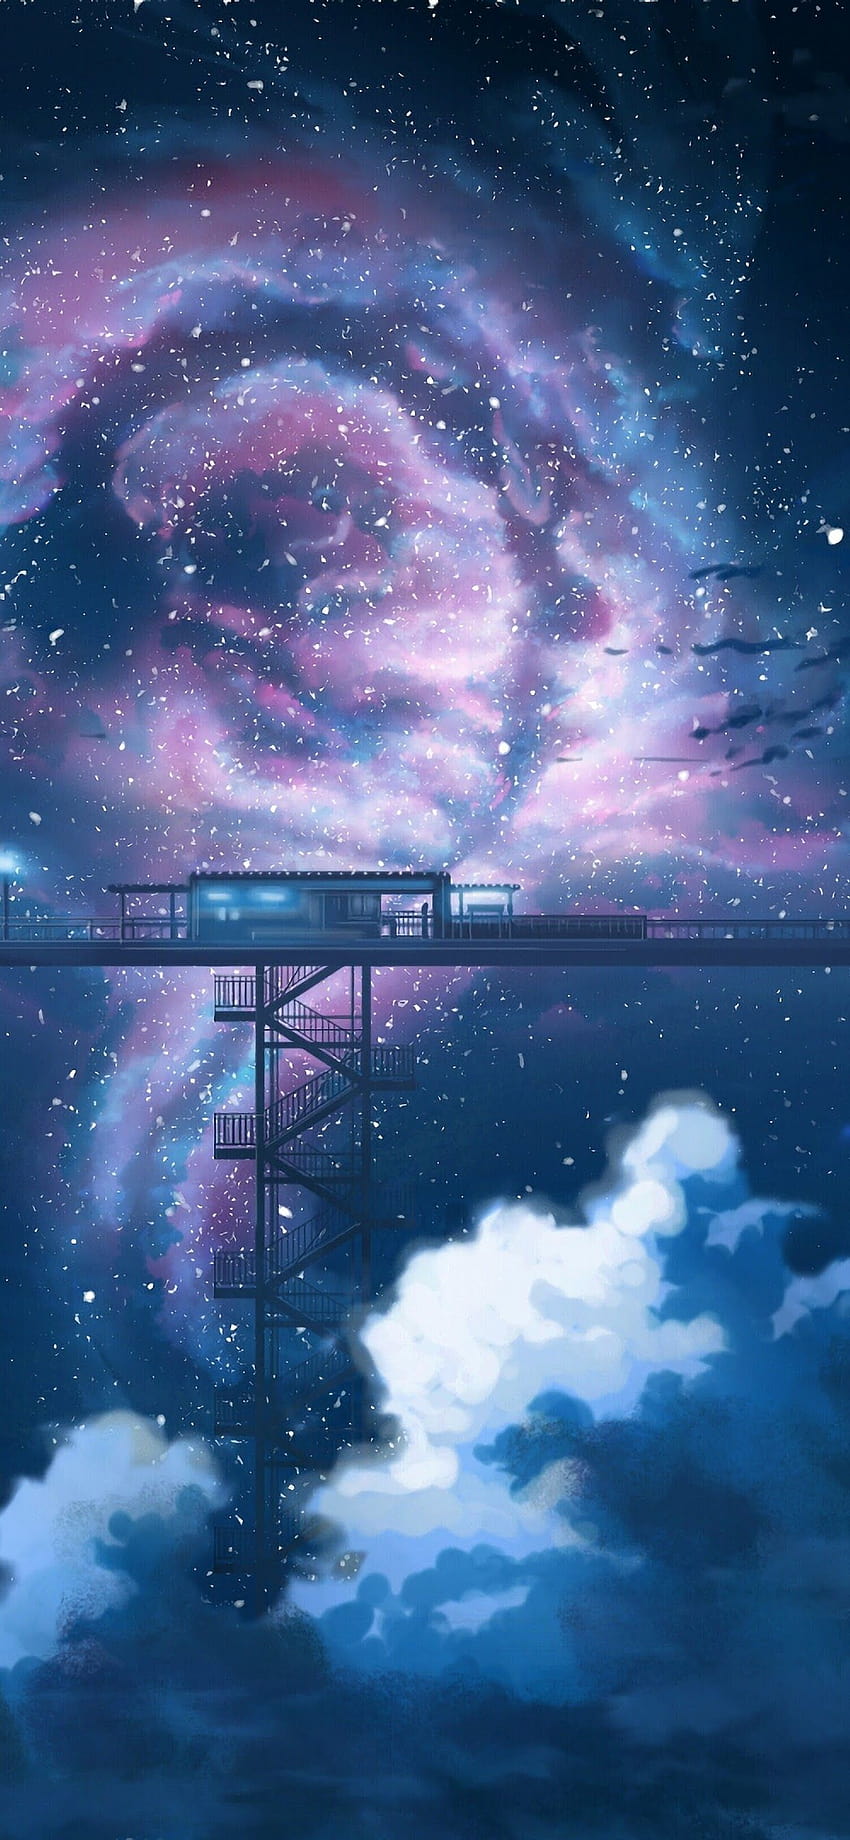 Hình nền Anime Night Sky Stars Clouds Scenery cho Iphone 11 Pro Max sẽ khiến bạn bị thu hút ngay lập tức bởi cảnh đêm tuyệt đẹp. Với những ánh sao lung linh, đám mây đầy màu sắc và một bầu trời đầy bí ẩn, bạn sẽ có một trải nghiệm tuyệt vời trên màn hình của bạn.